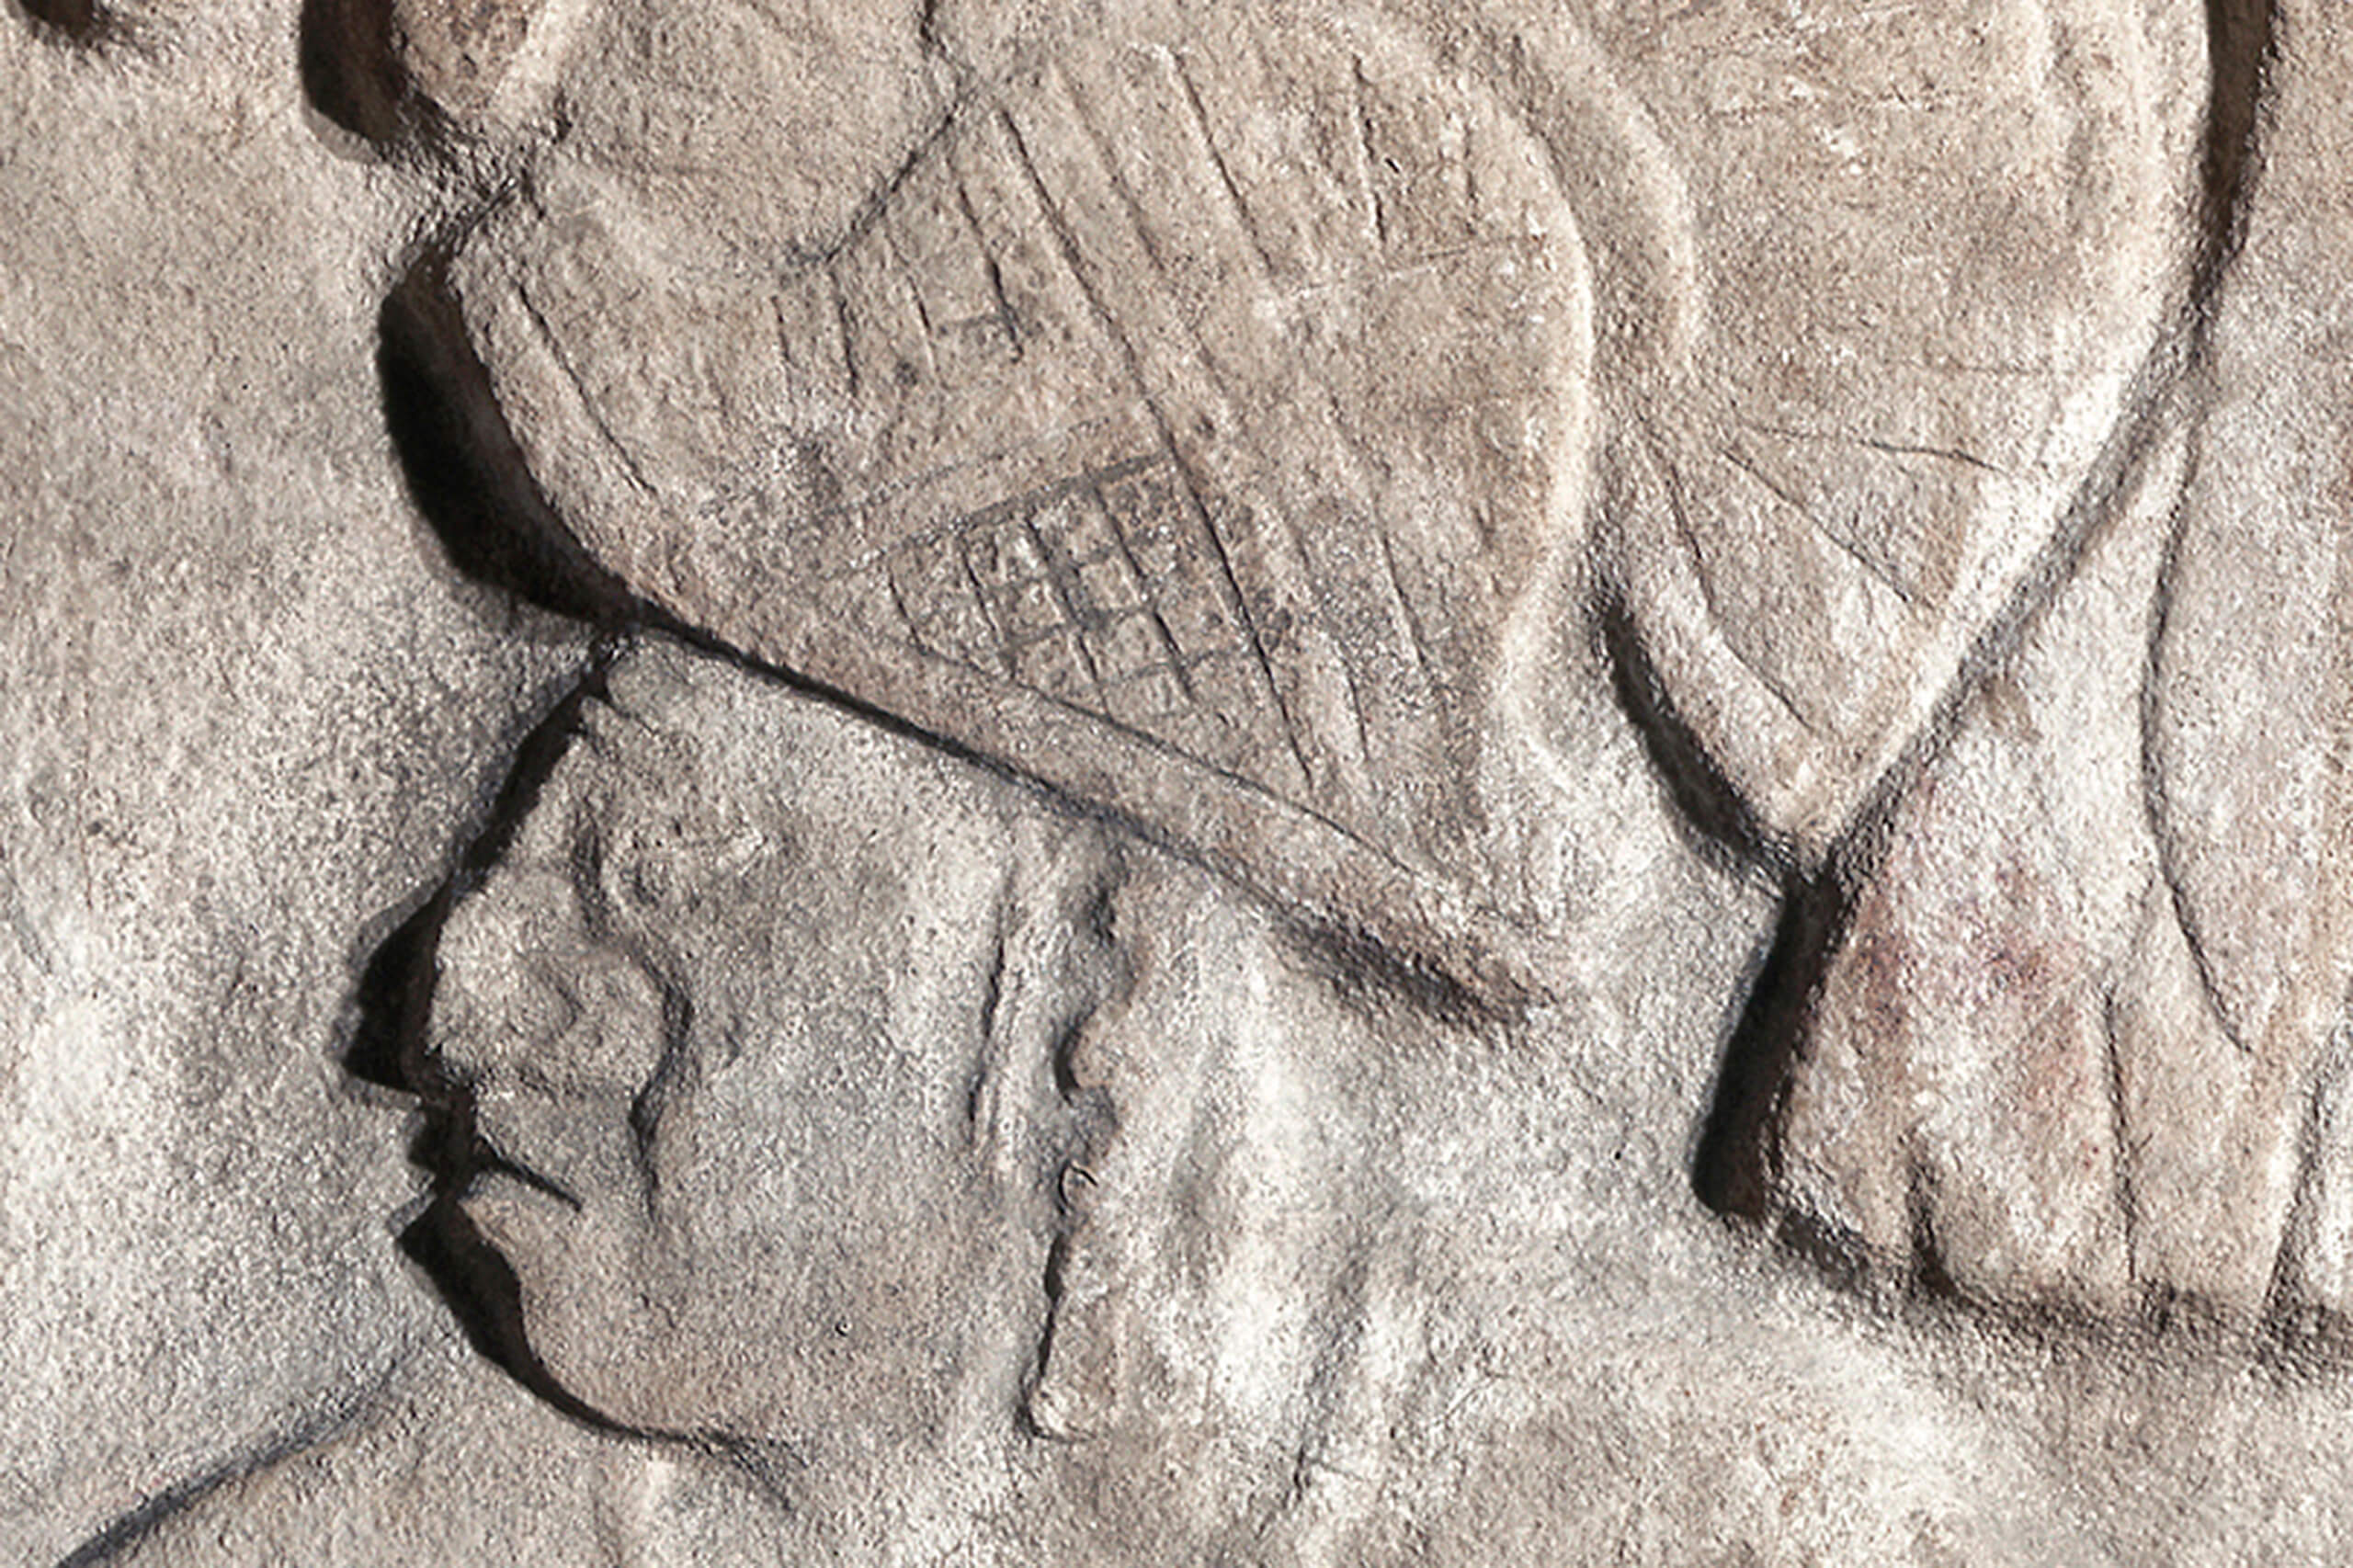 Estela con personaje masculino de pie | El México antiguo. Salas de Arte Prehispánico | Museo Amparo, Puebla